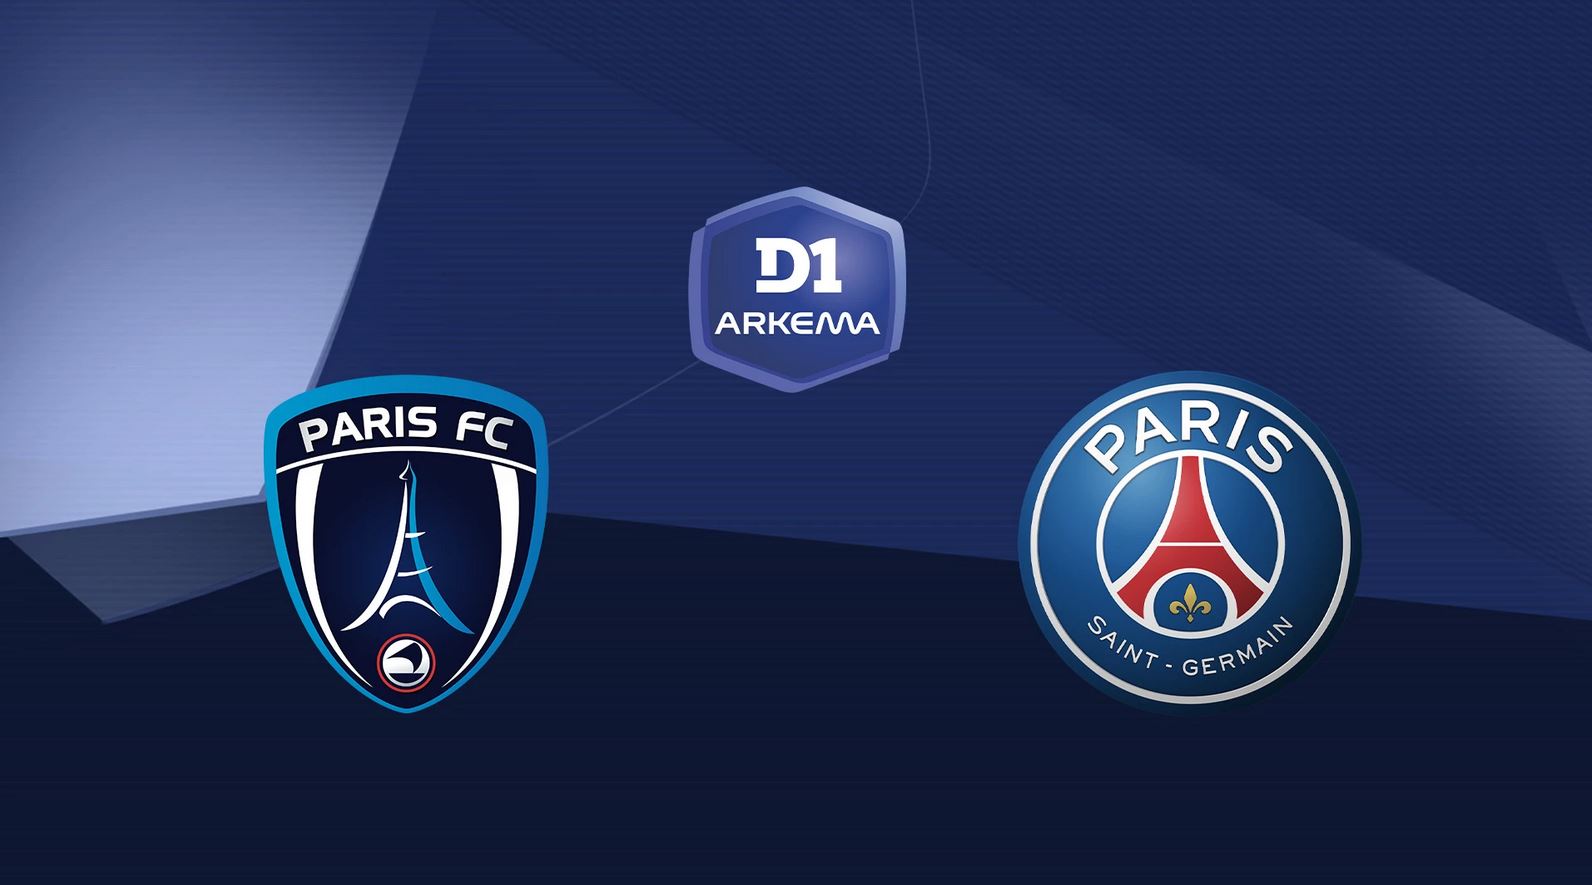 Paris FC / Paris SG (TV/Streaming) Sur quelle chaîne et à quelle heure voir le match de D1 Arkéma ?